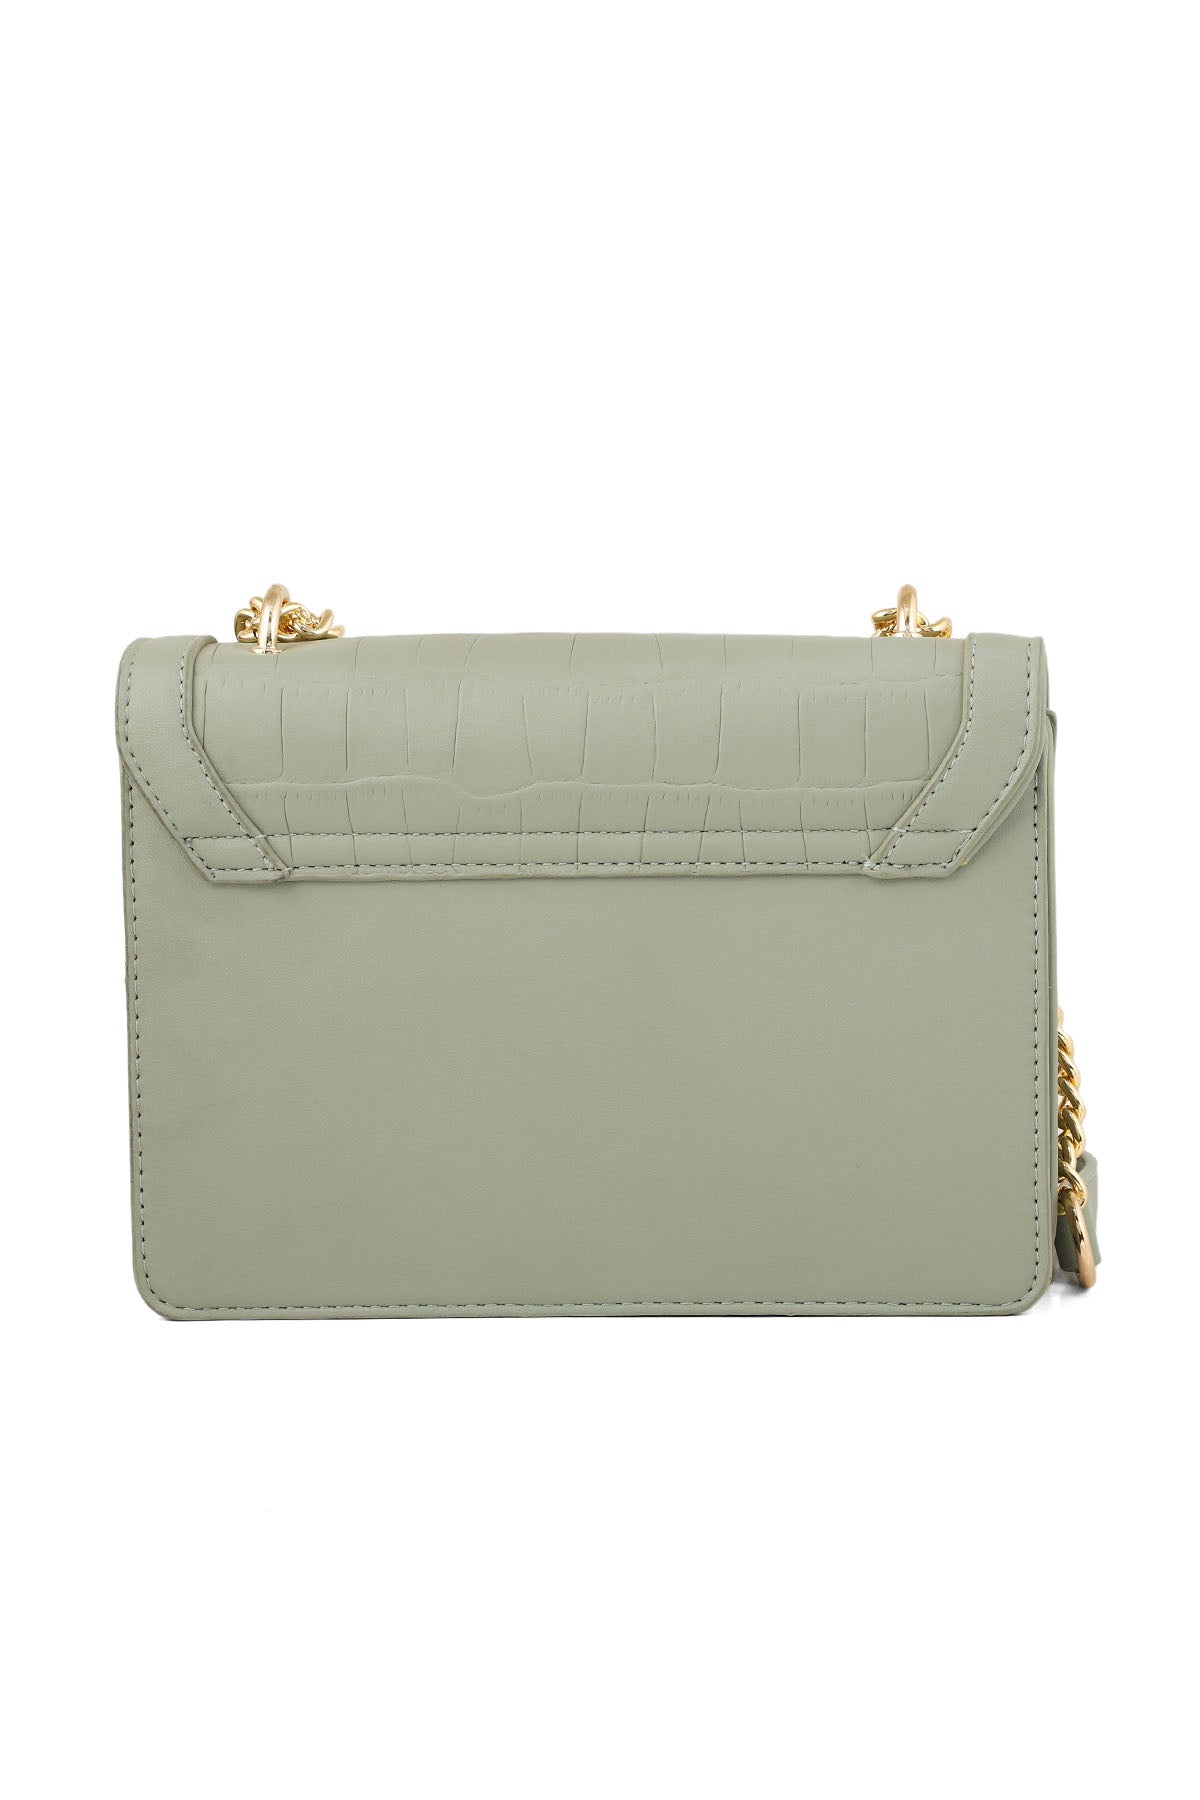 Flap Shoulder Bags B14760-Green